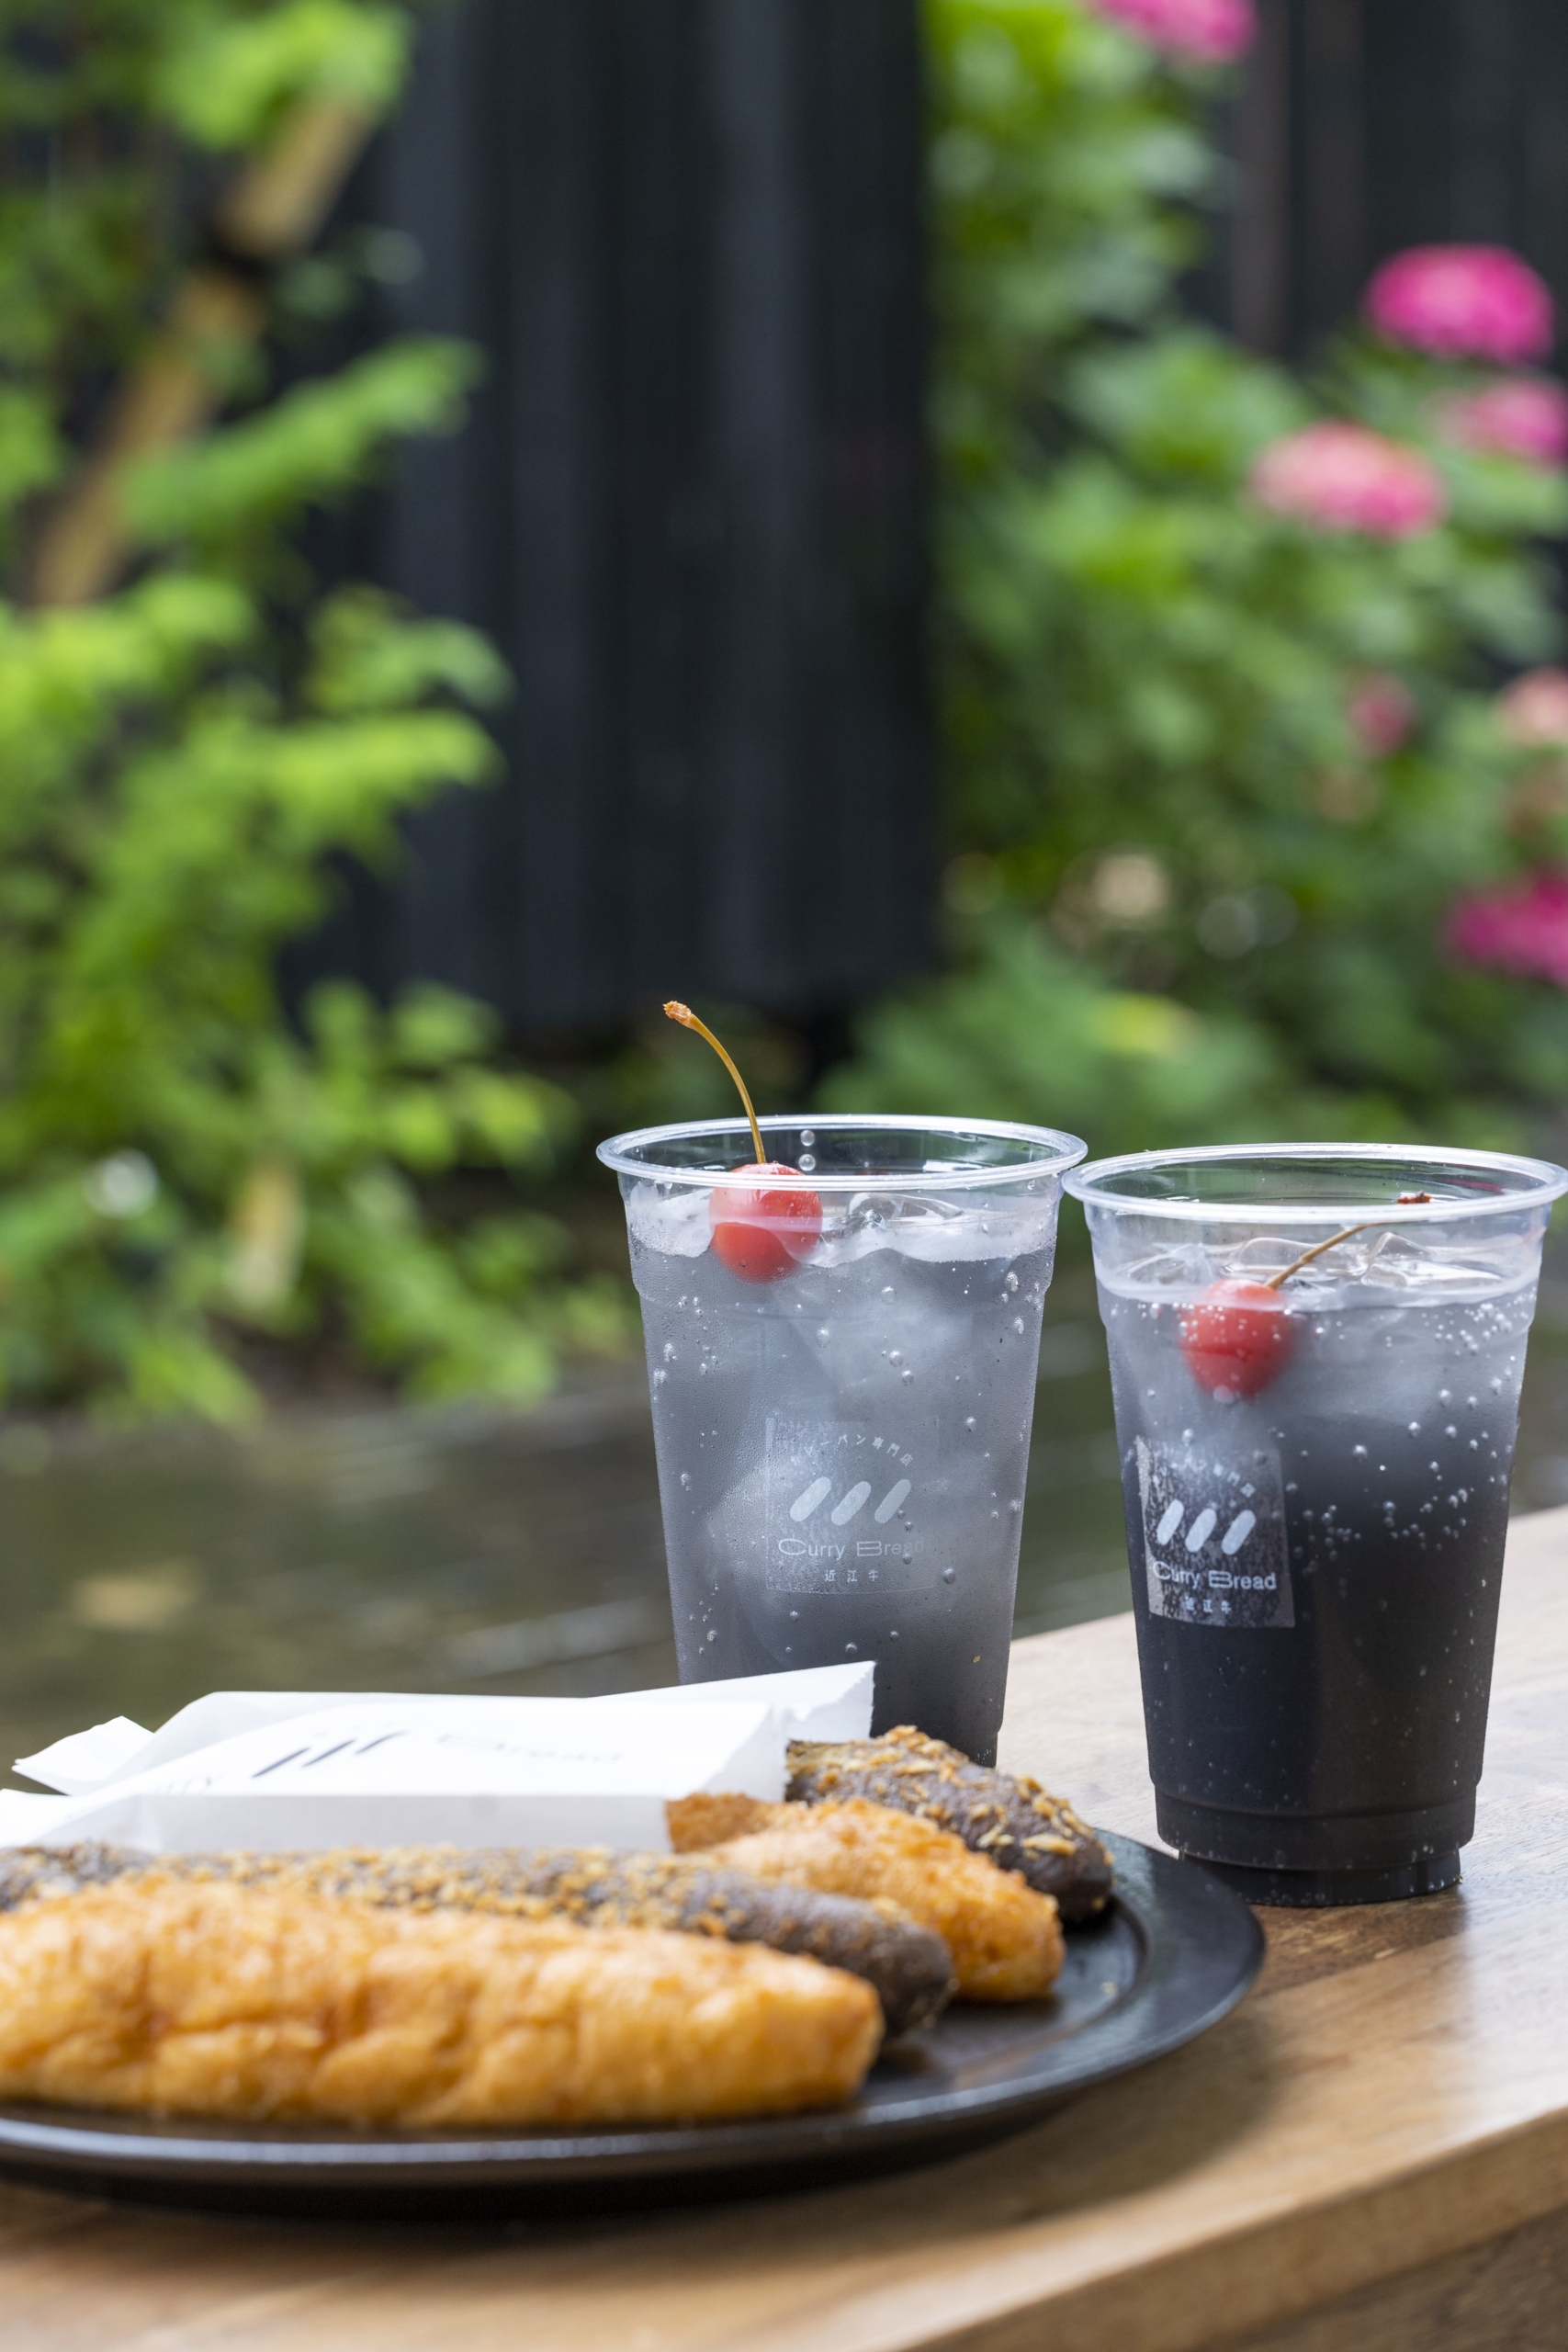 カレーパンのために作られたクラフトコーラが登場　
デトックス効果のある竹炭を使用した黒コーラが7月2日に発売